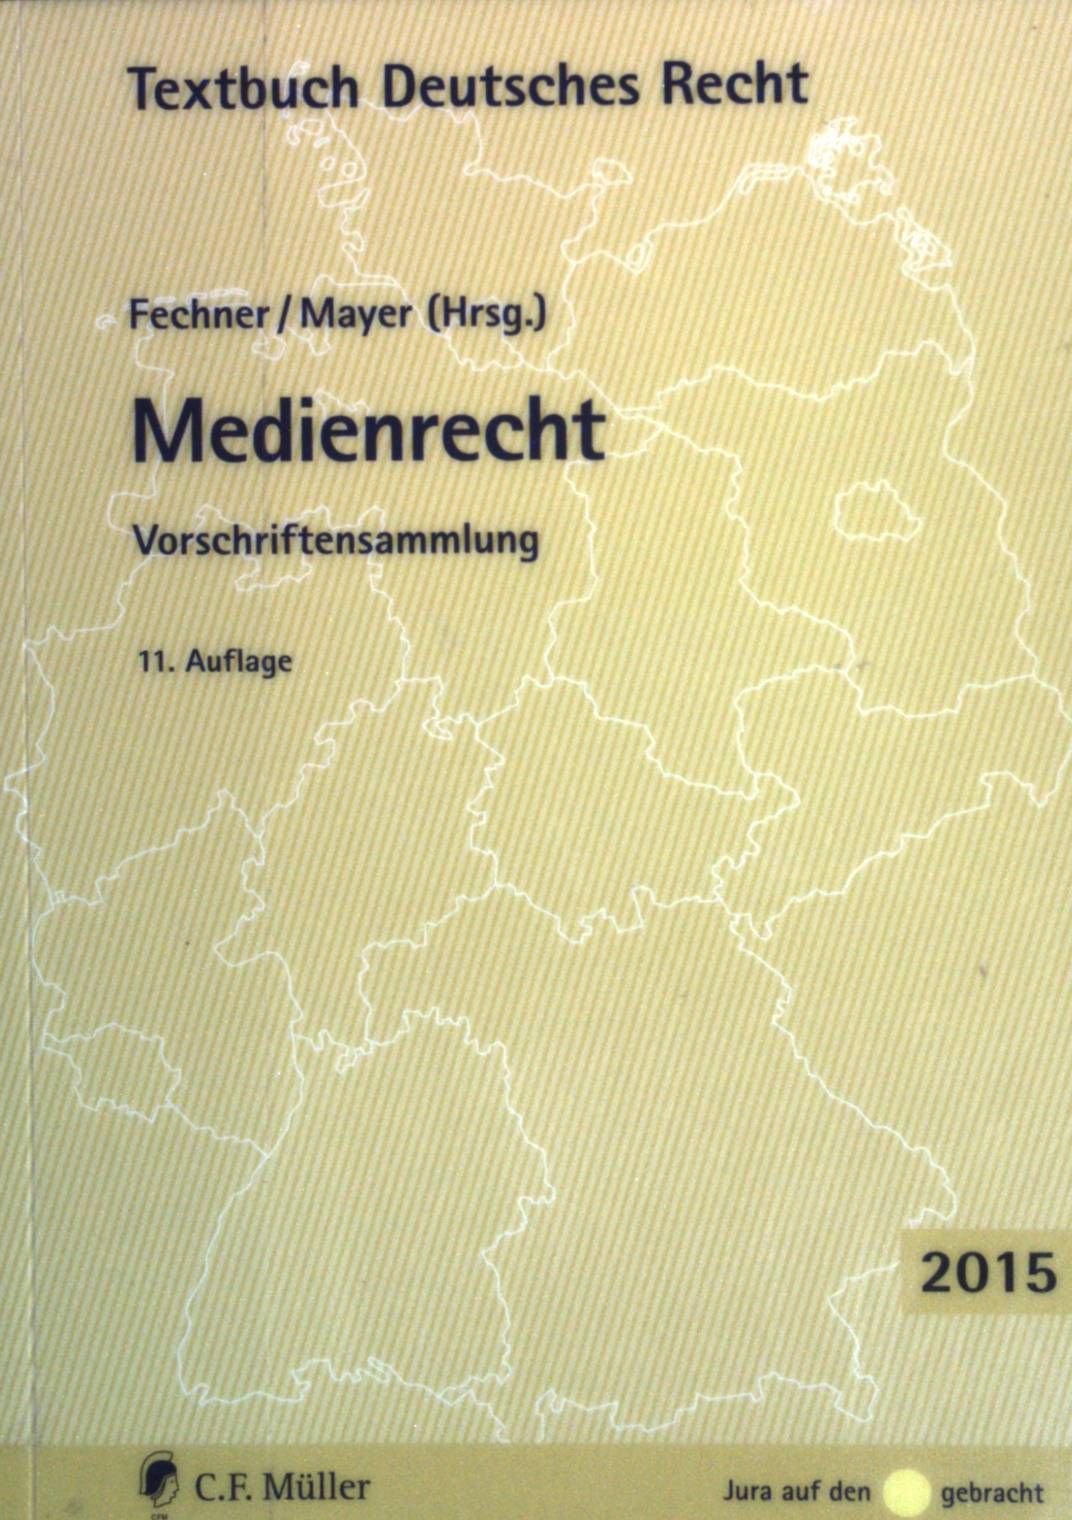 Medienrecht : Vorschriftensammlung. Textbuch deutsches Recht; Jura auf den Punkt gebracht - Fechner, Frank (Hrsg.)